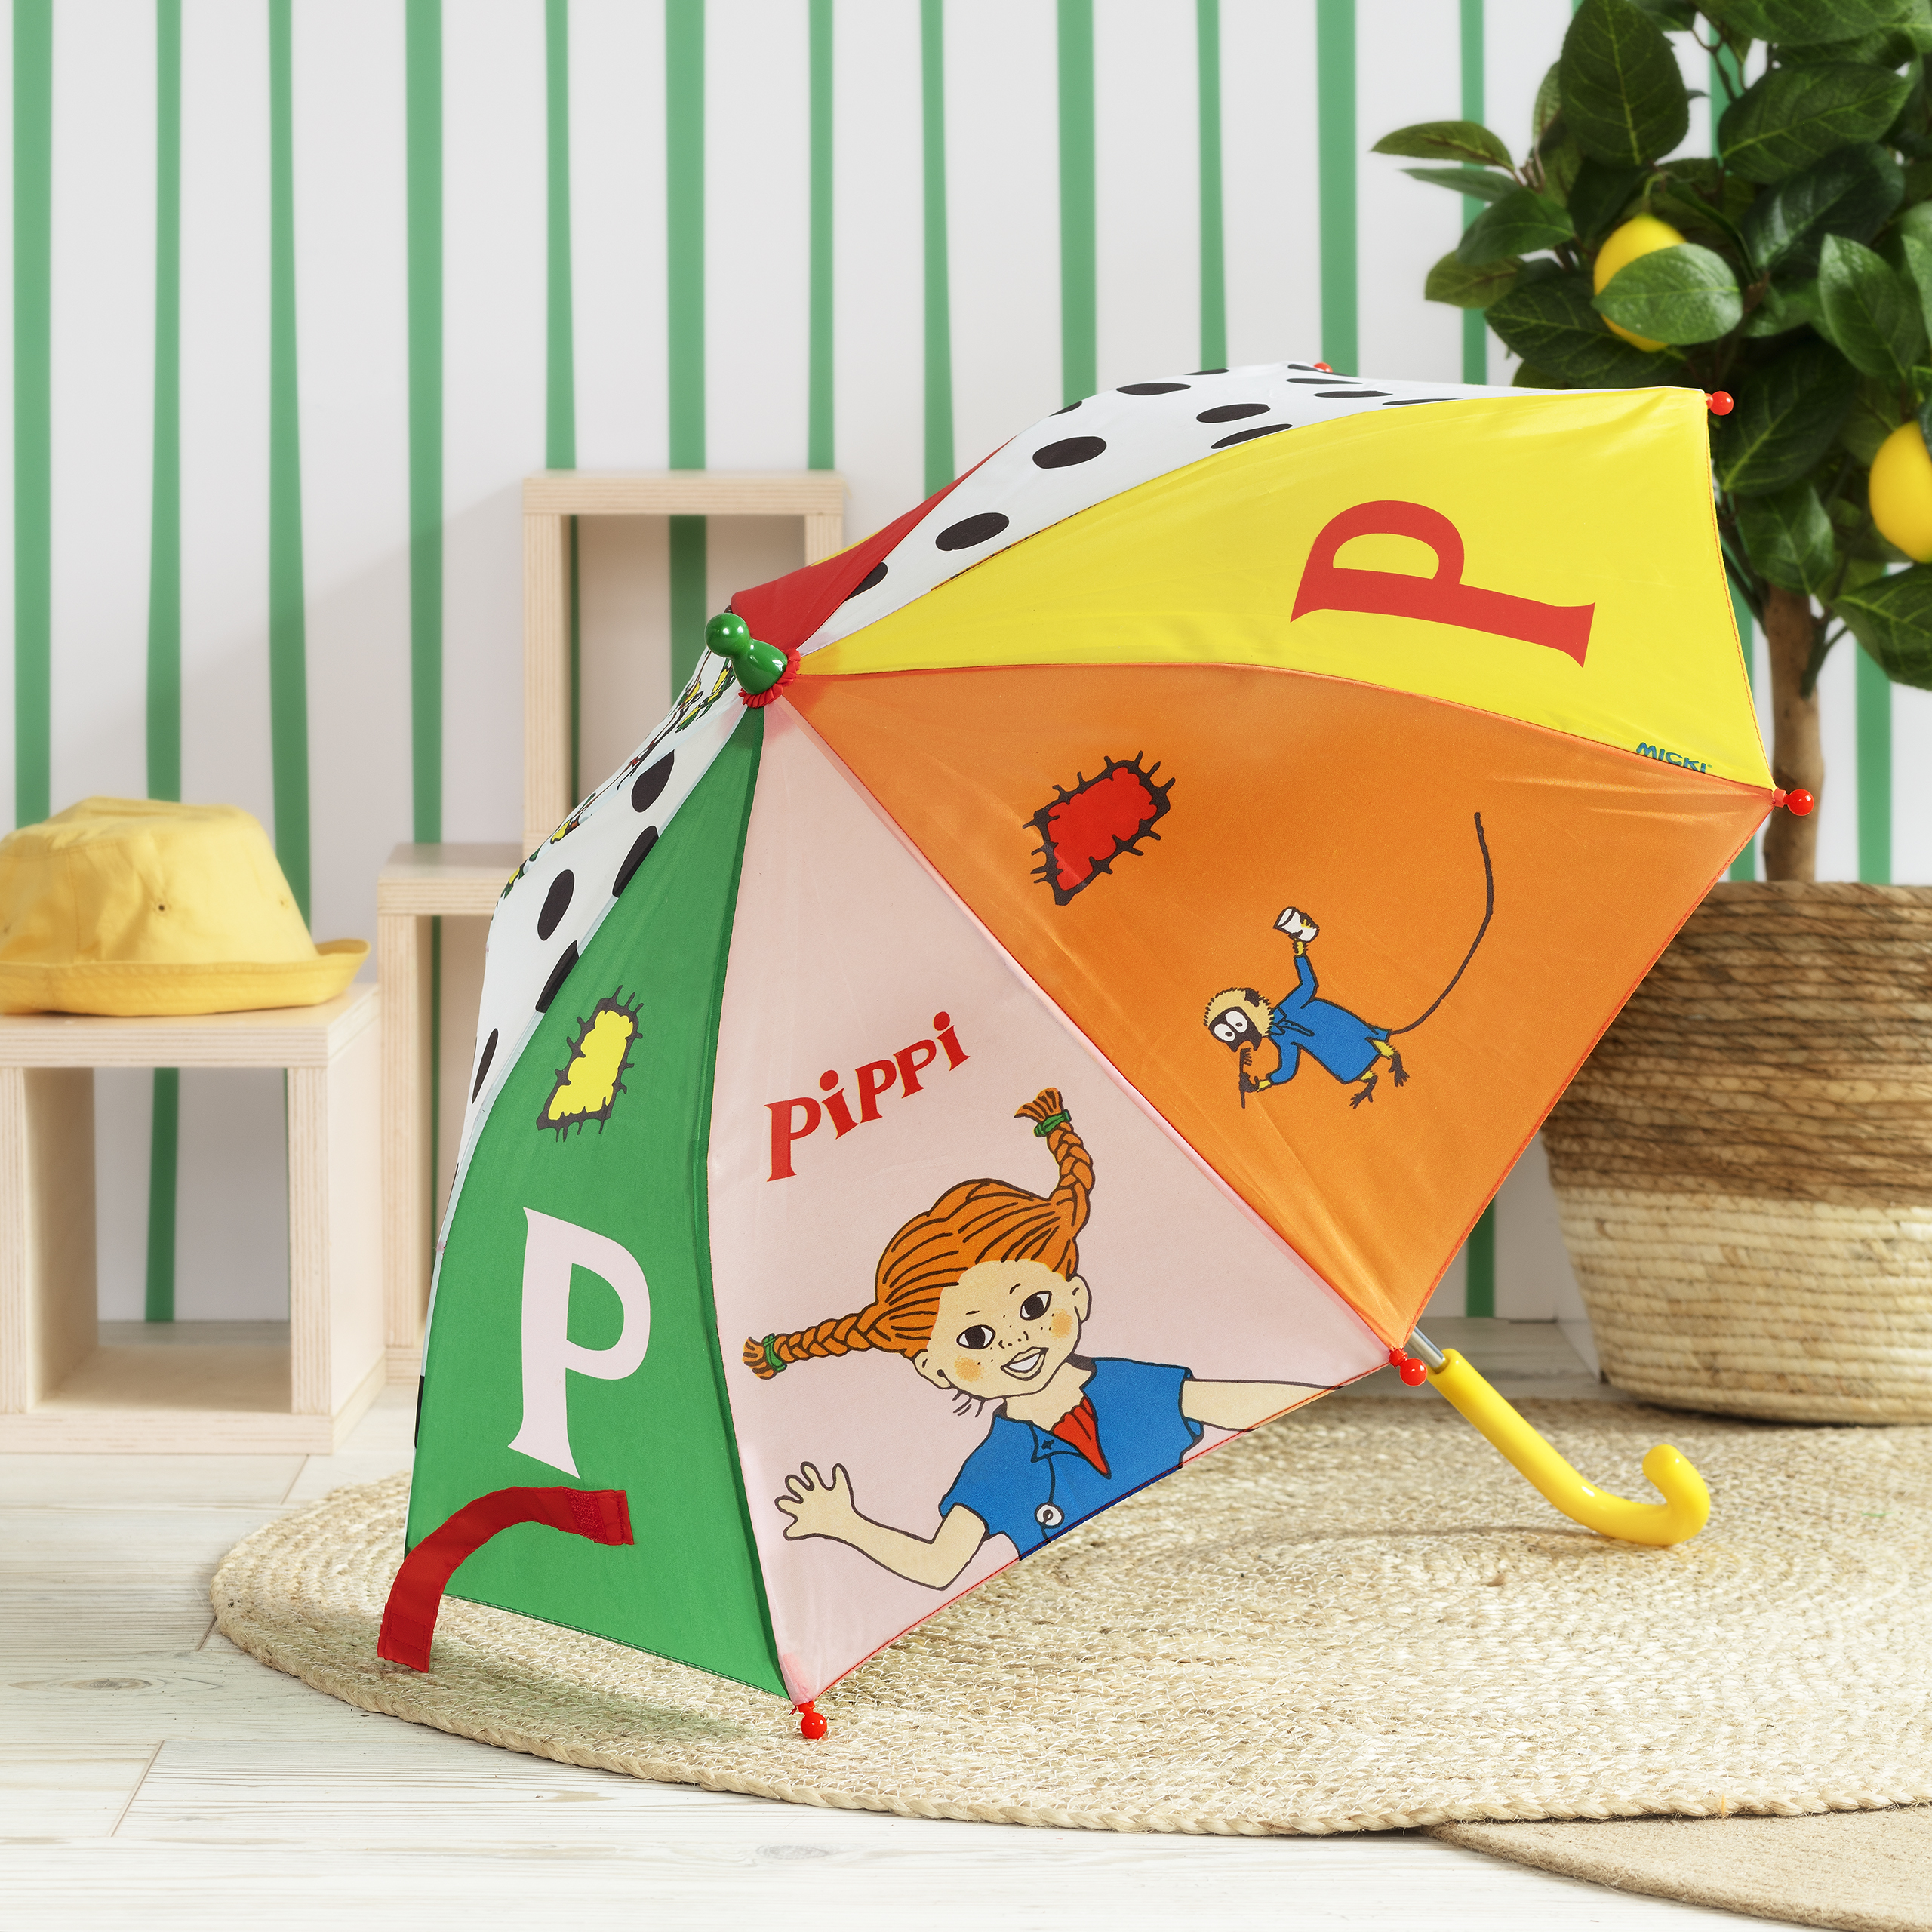 Pippi pippi umbrella